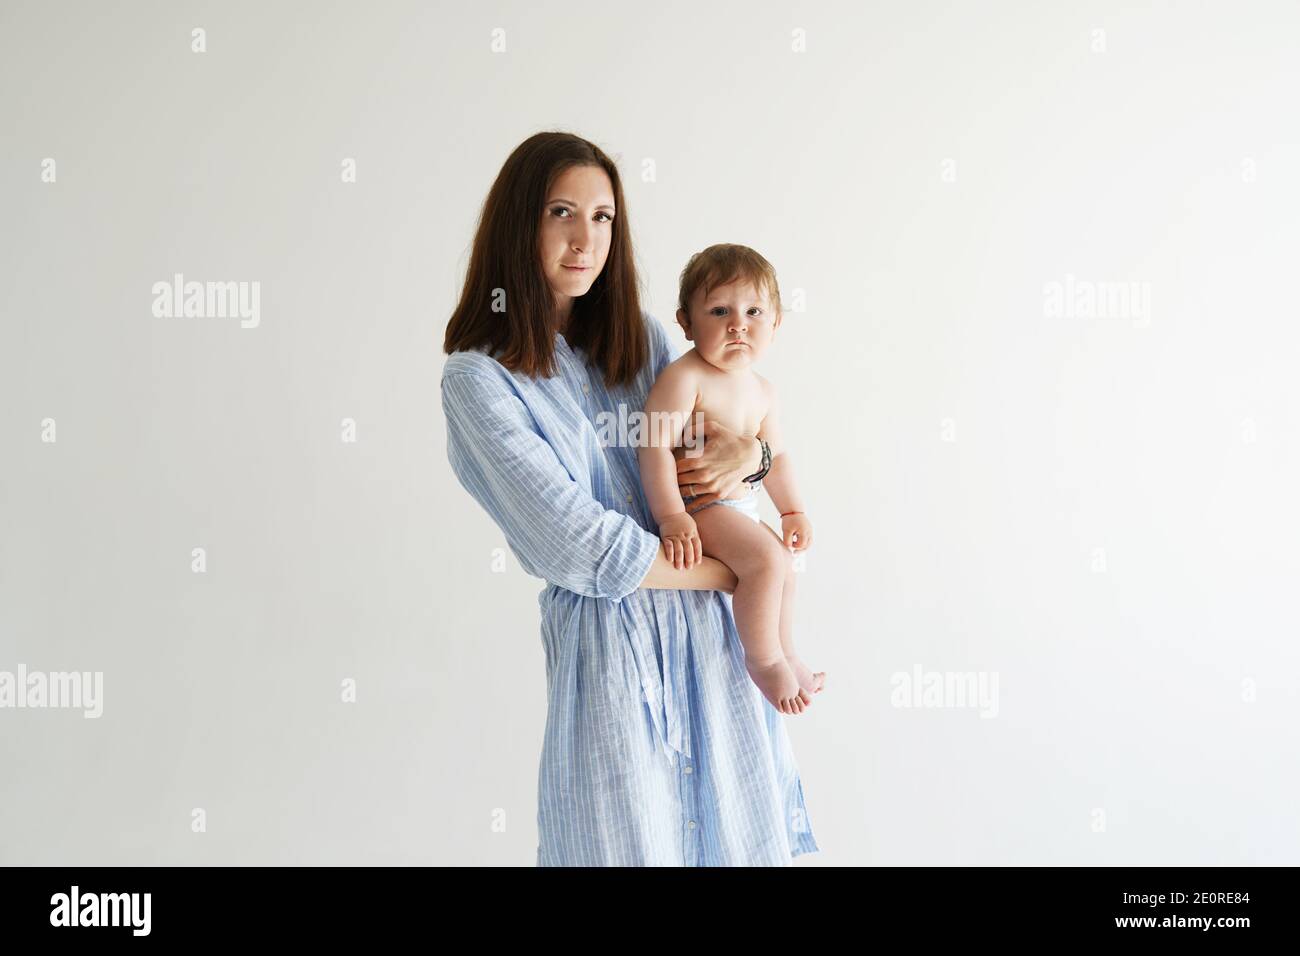 Portrait der schönen Dame in romantischen blauen Kleid und sie Süßes kleines Baby, das sich in eine vor der Kamera stehende Kamera freut Weiße Wand Stockfoto